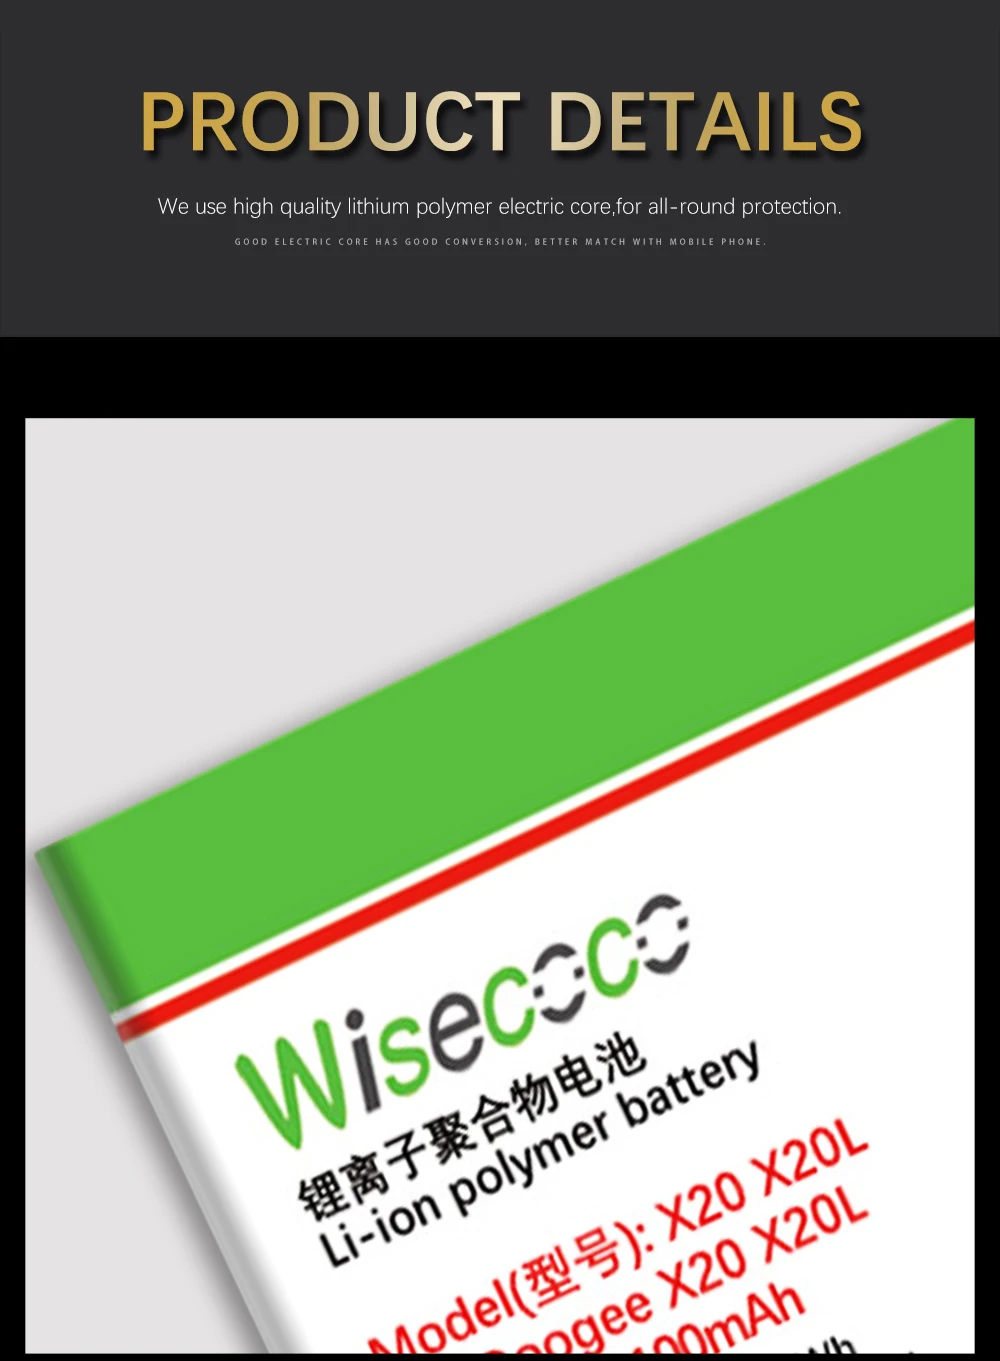 WISECOCO 2 шт. 4100 мАч батарея 17582580 Для DOOGEE X20 X20L мобильный телефон новейшее производство высокое качество батарея+ код отслеживания